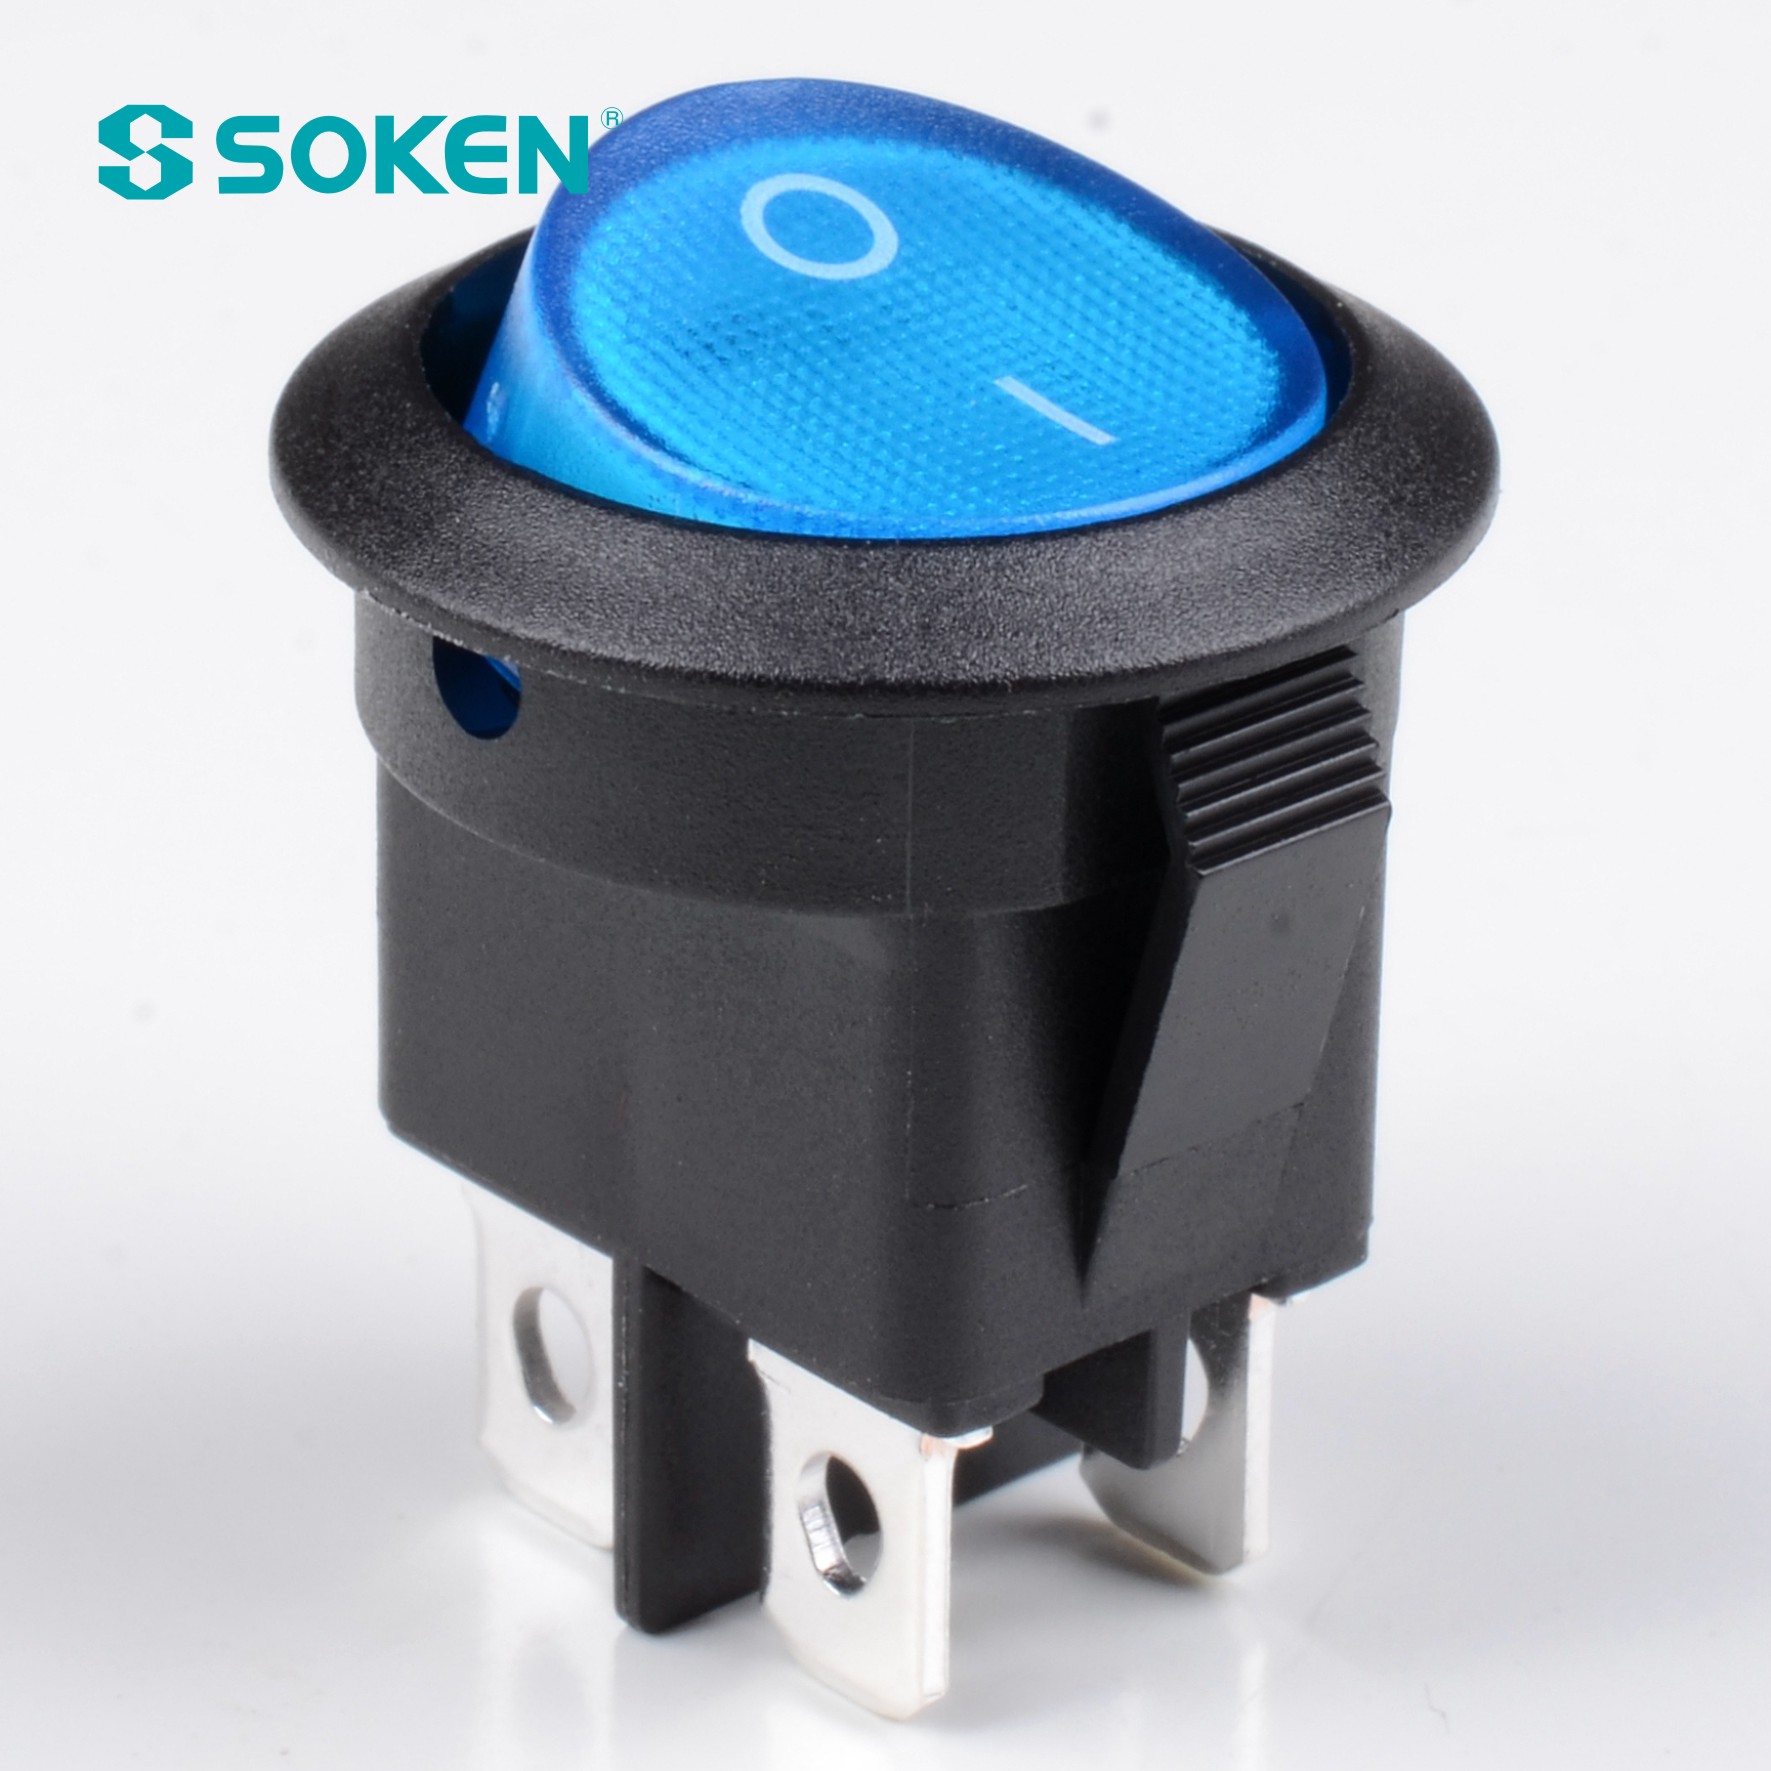 Soken Rk2-13c Interruptor basculante redondo de encendido y apagado